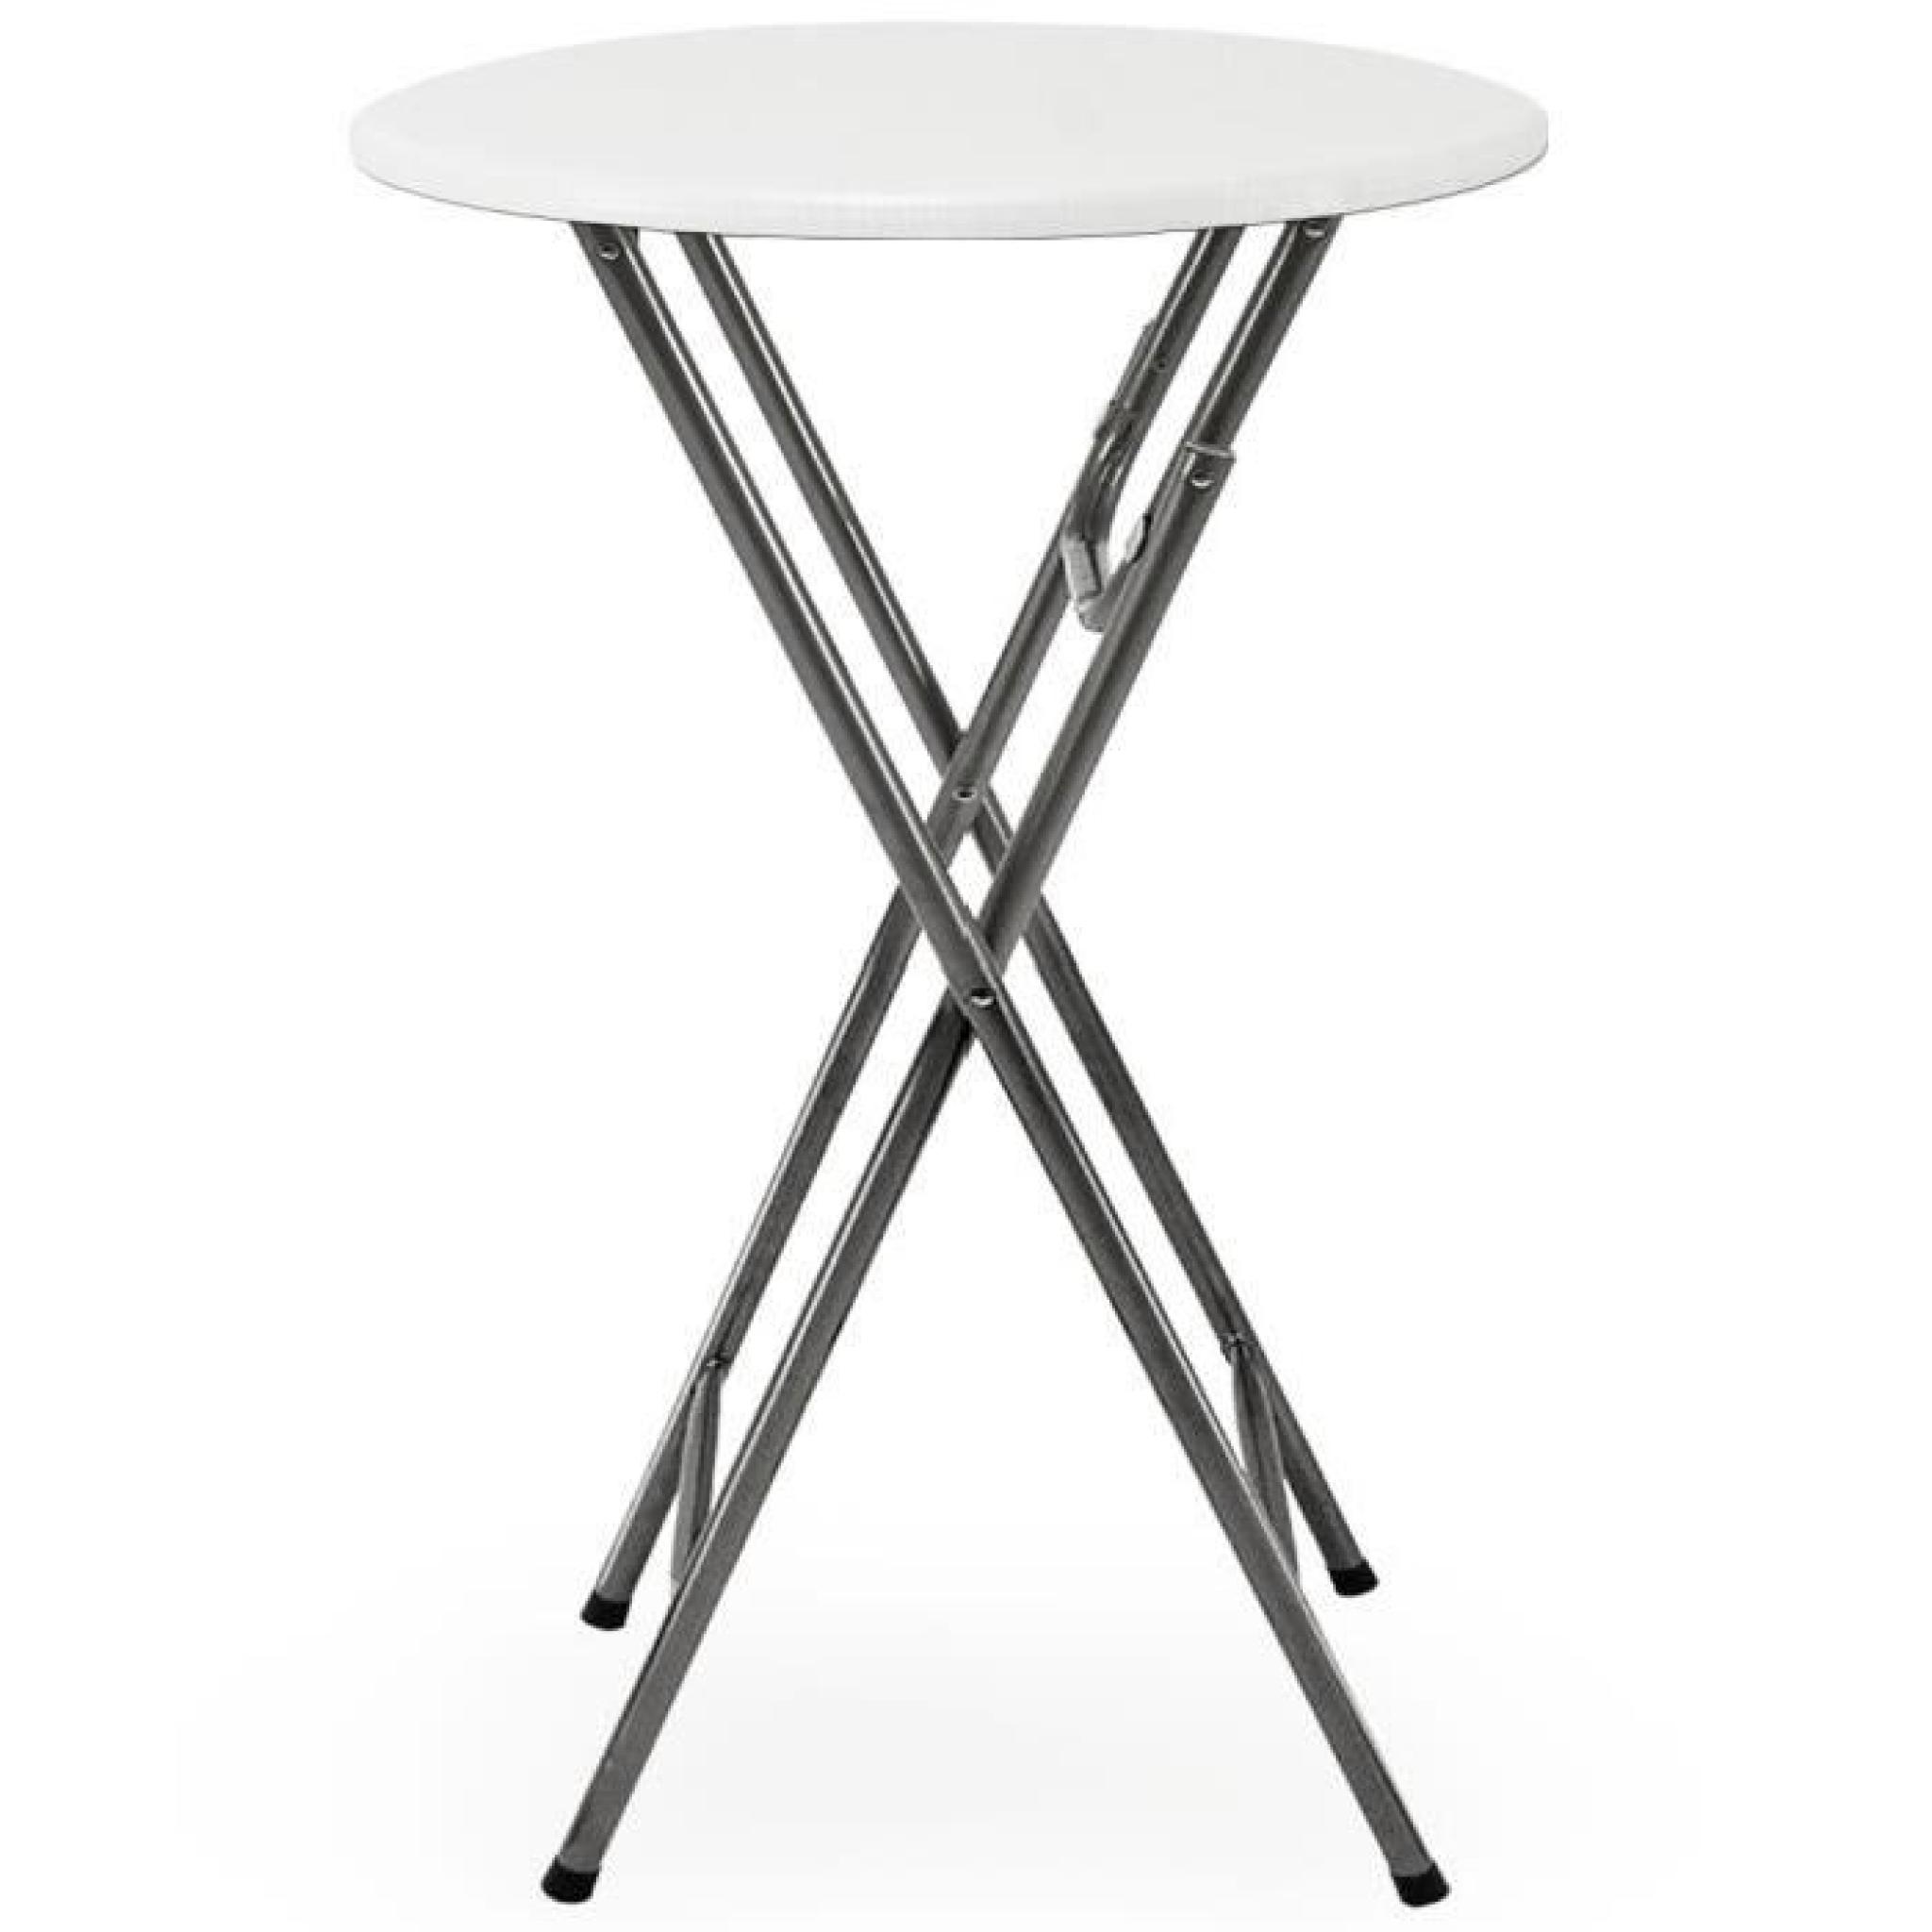 2 x Table haute pliable - Table de bar pliante en MDF blanc Aspect de bois pas cher